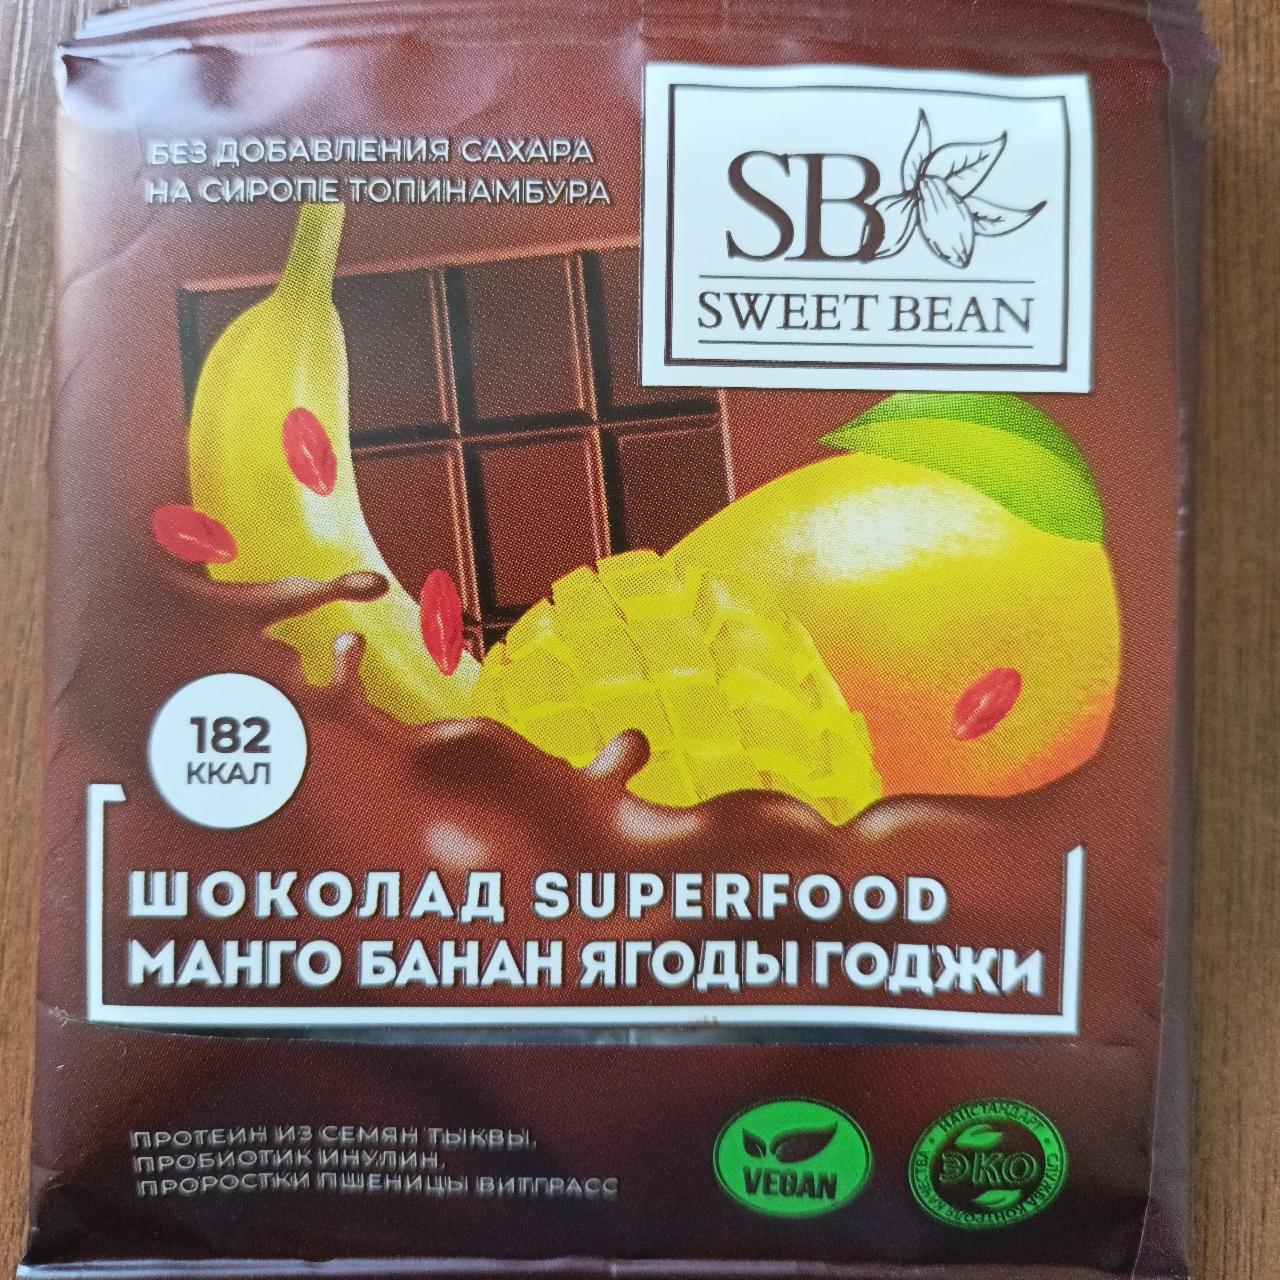 Фото - Шоколад на сиропе топинамбура Банан манго ягоды Годжи Superfood Sweet bean